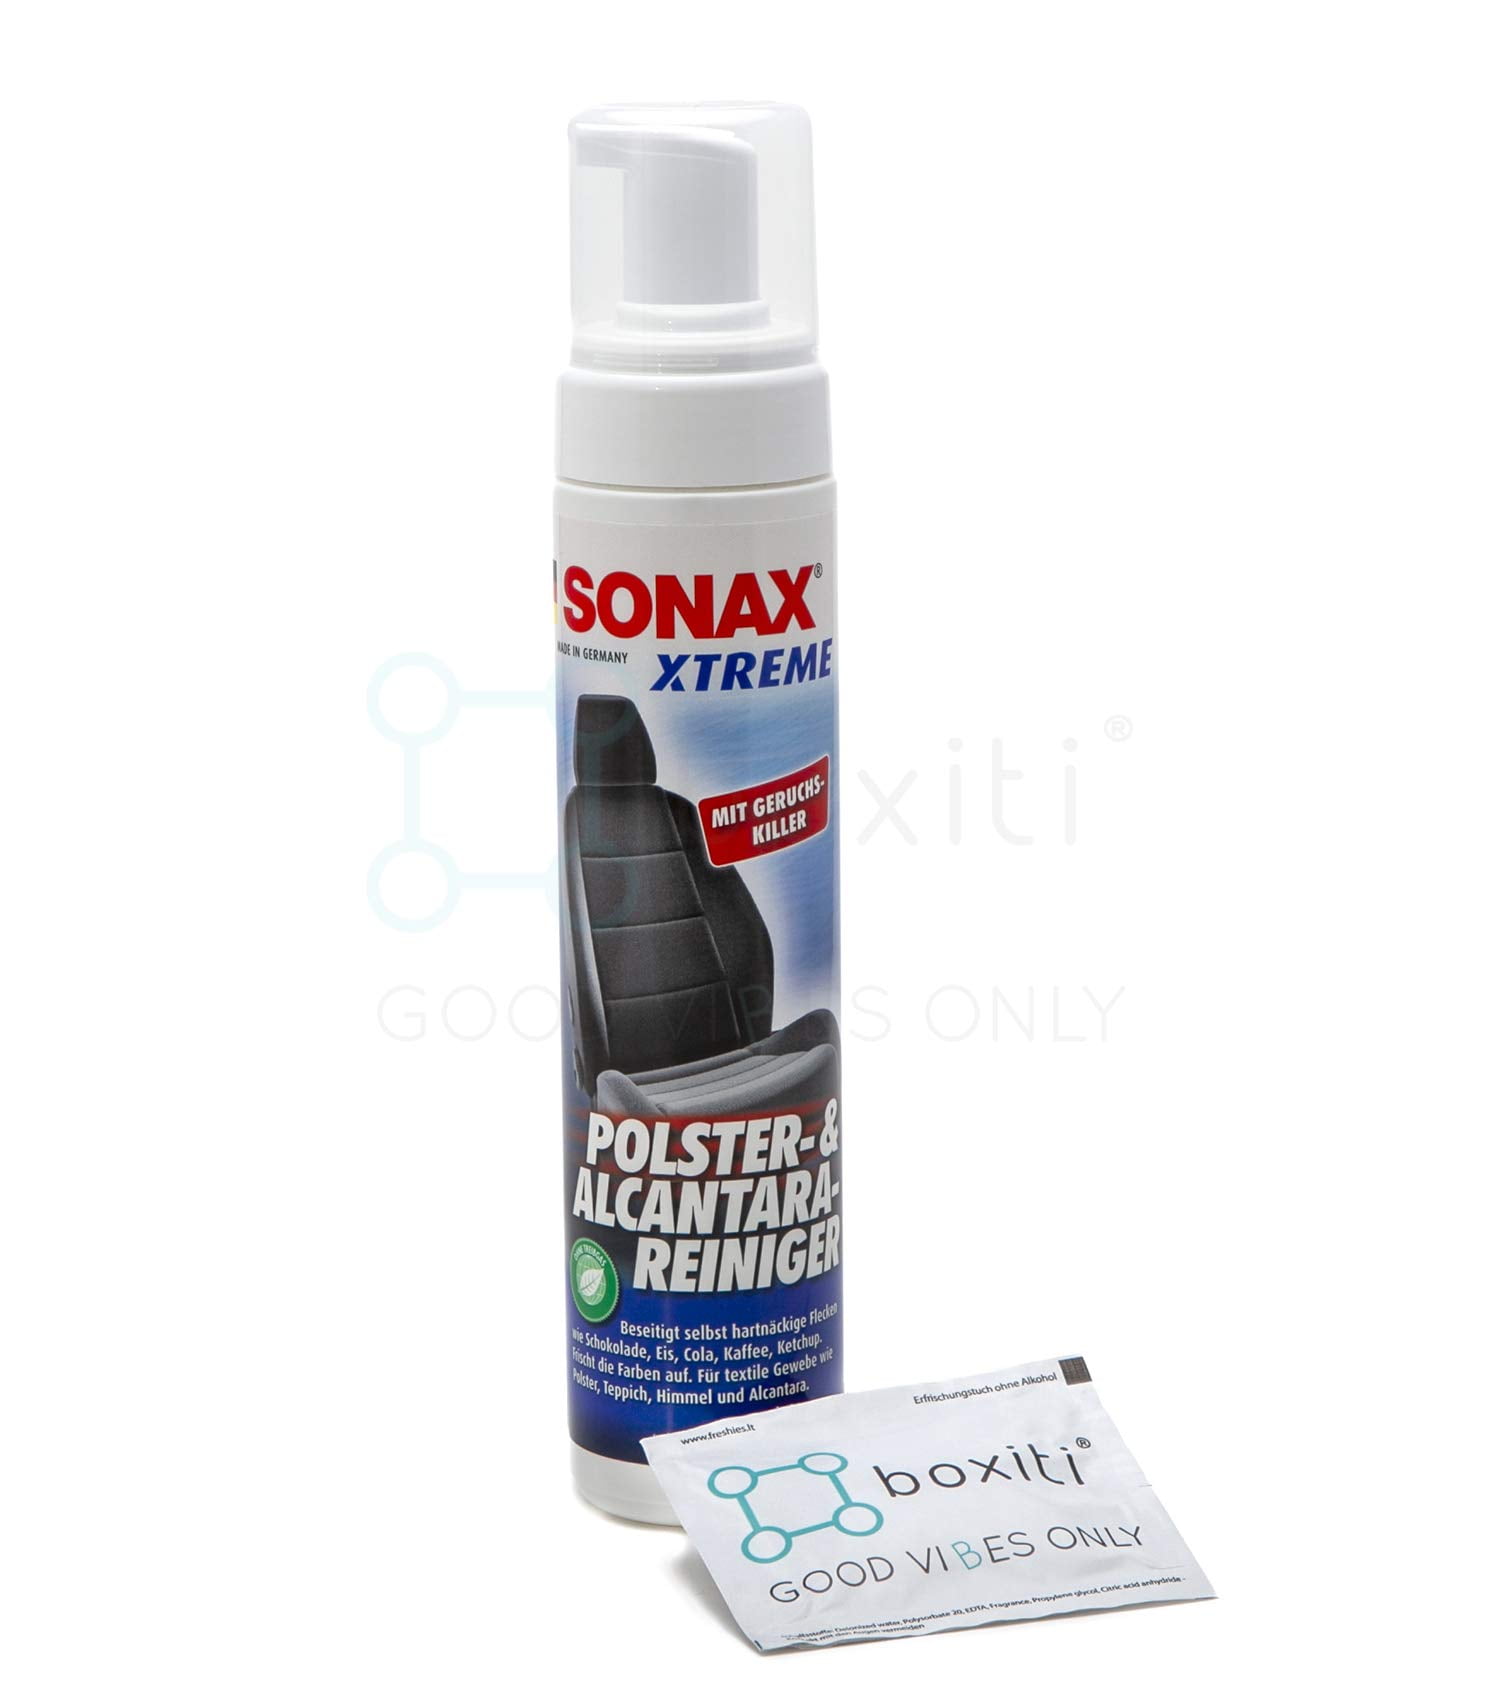 SONAX XTREME Polster- & Alcantara Reiniger 9x 400 Milliliter